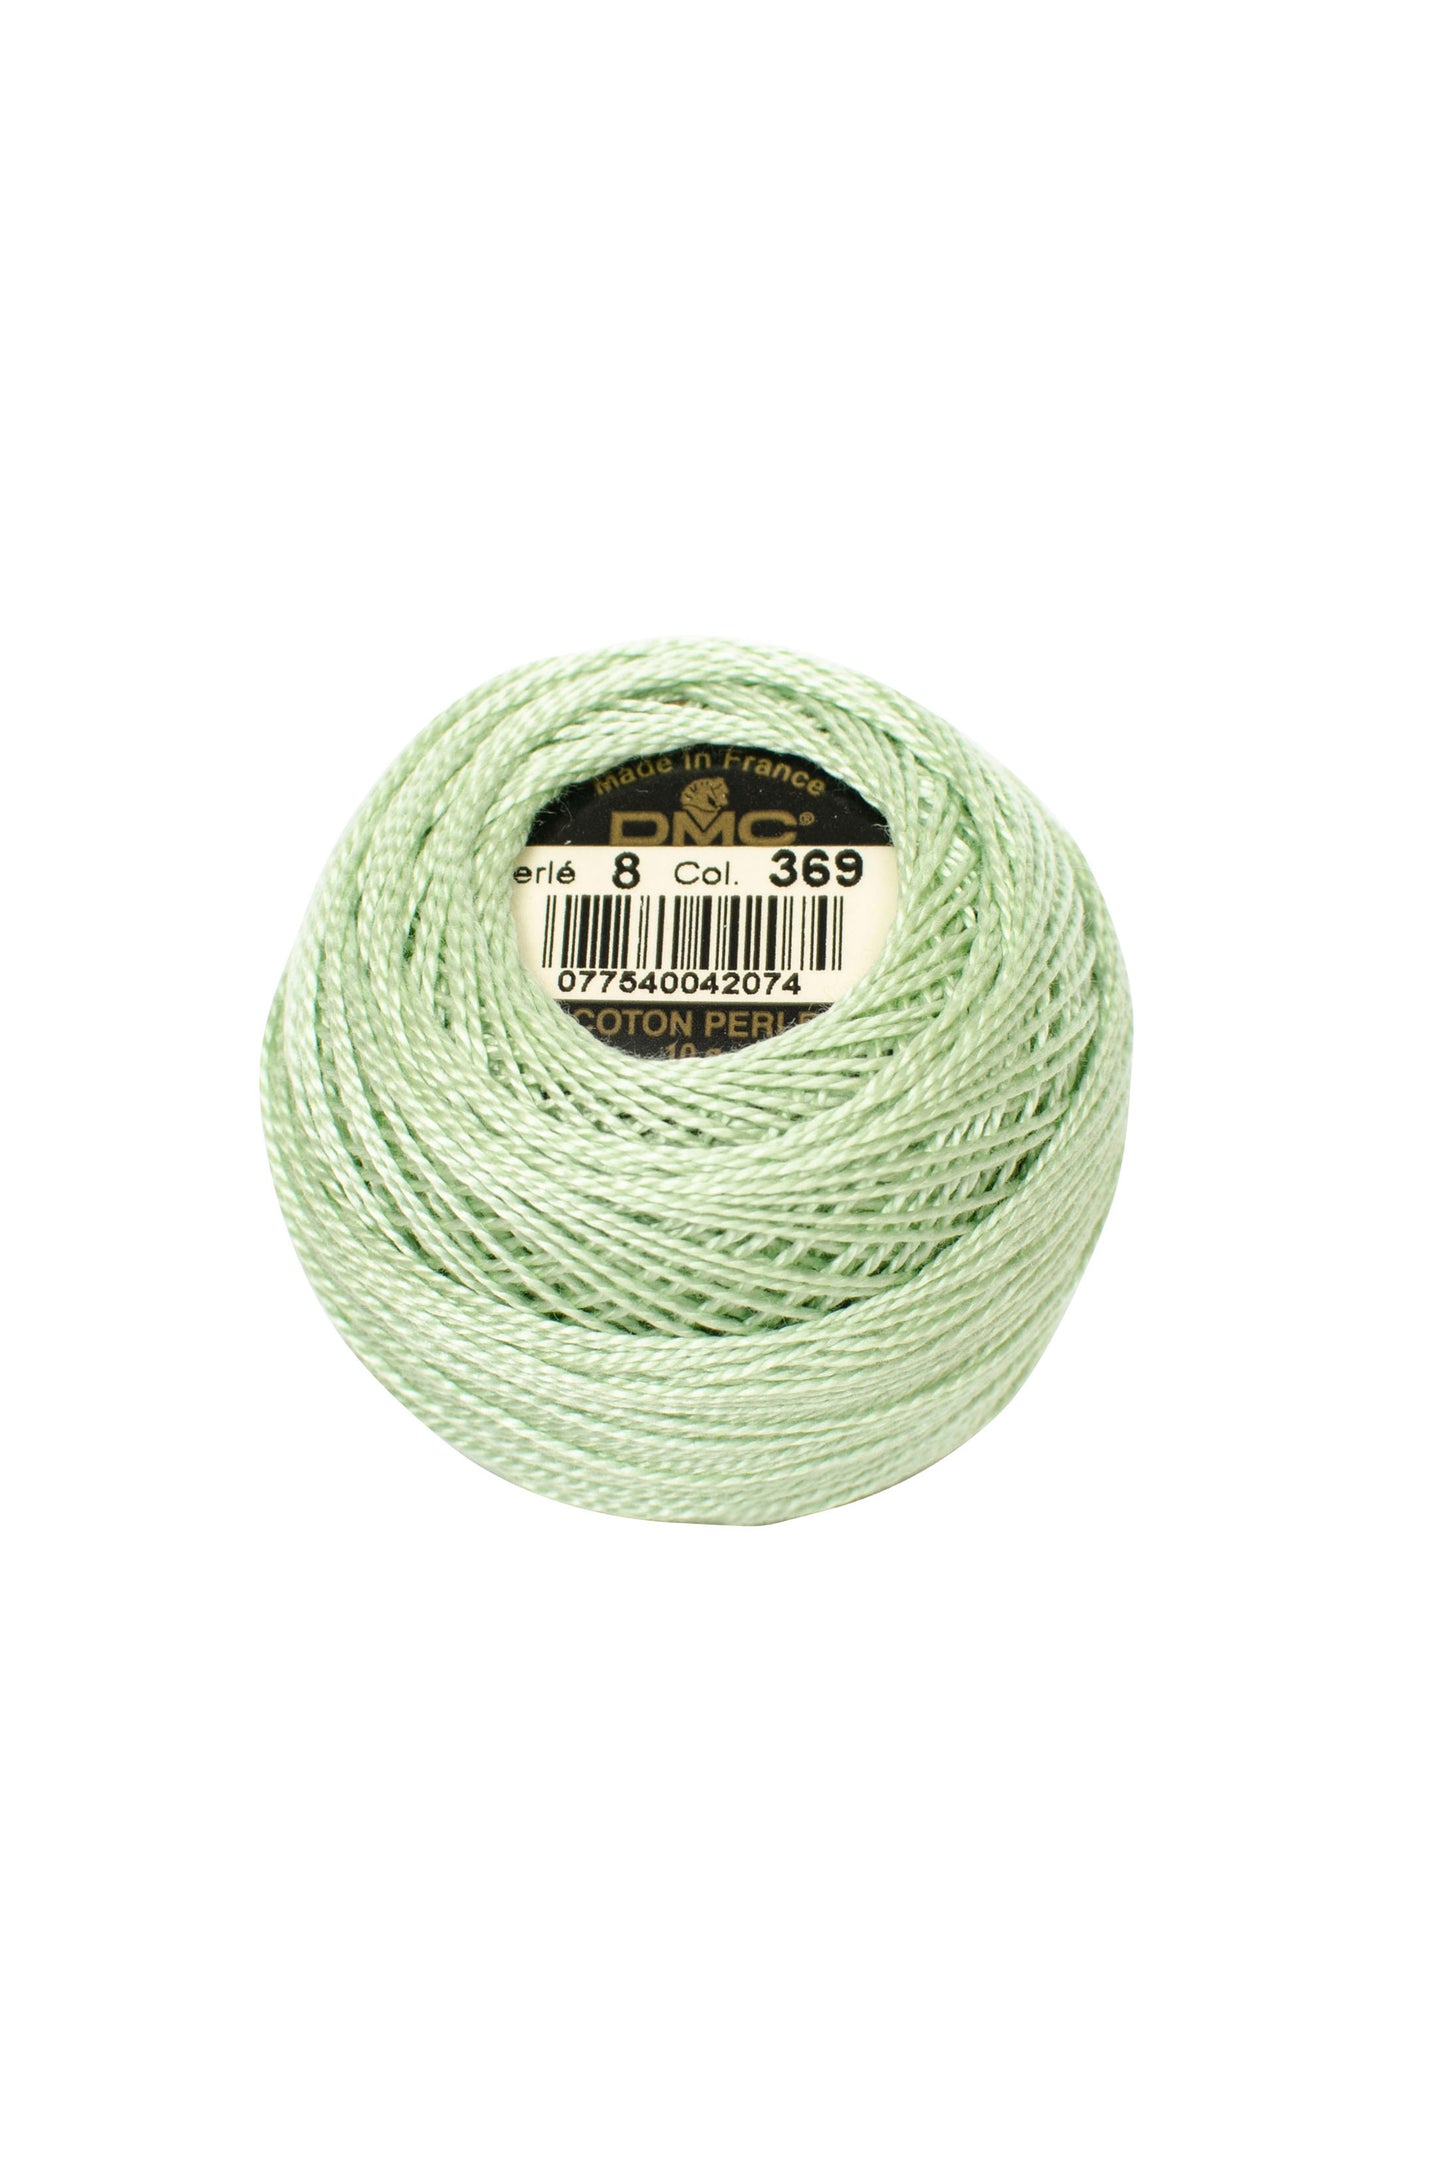 369 Very Light Pistachio Green - DMC #8 Perle Cotton Ball